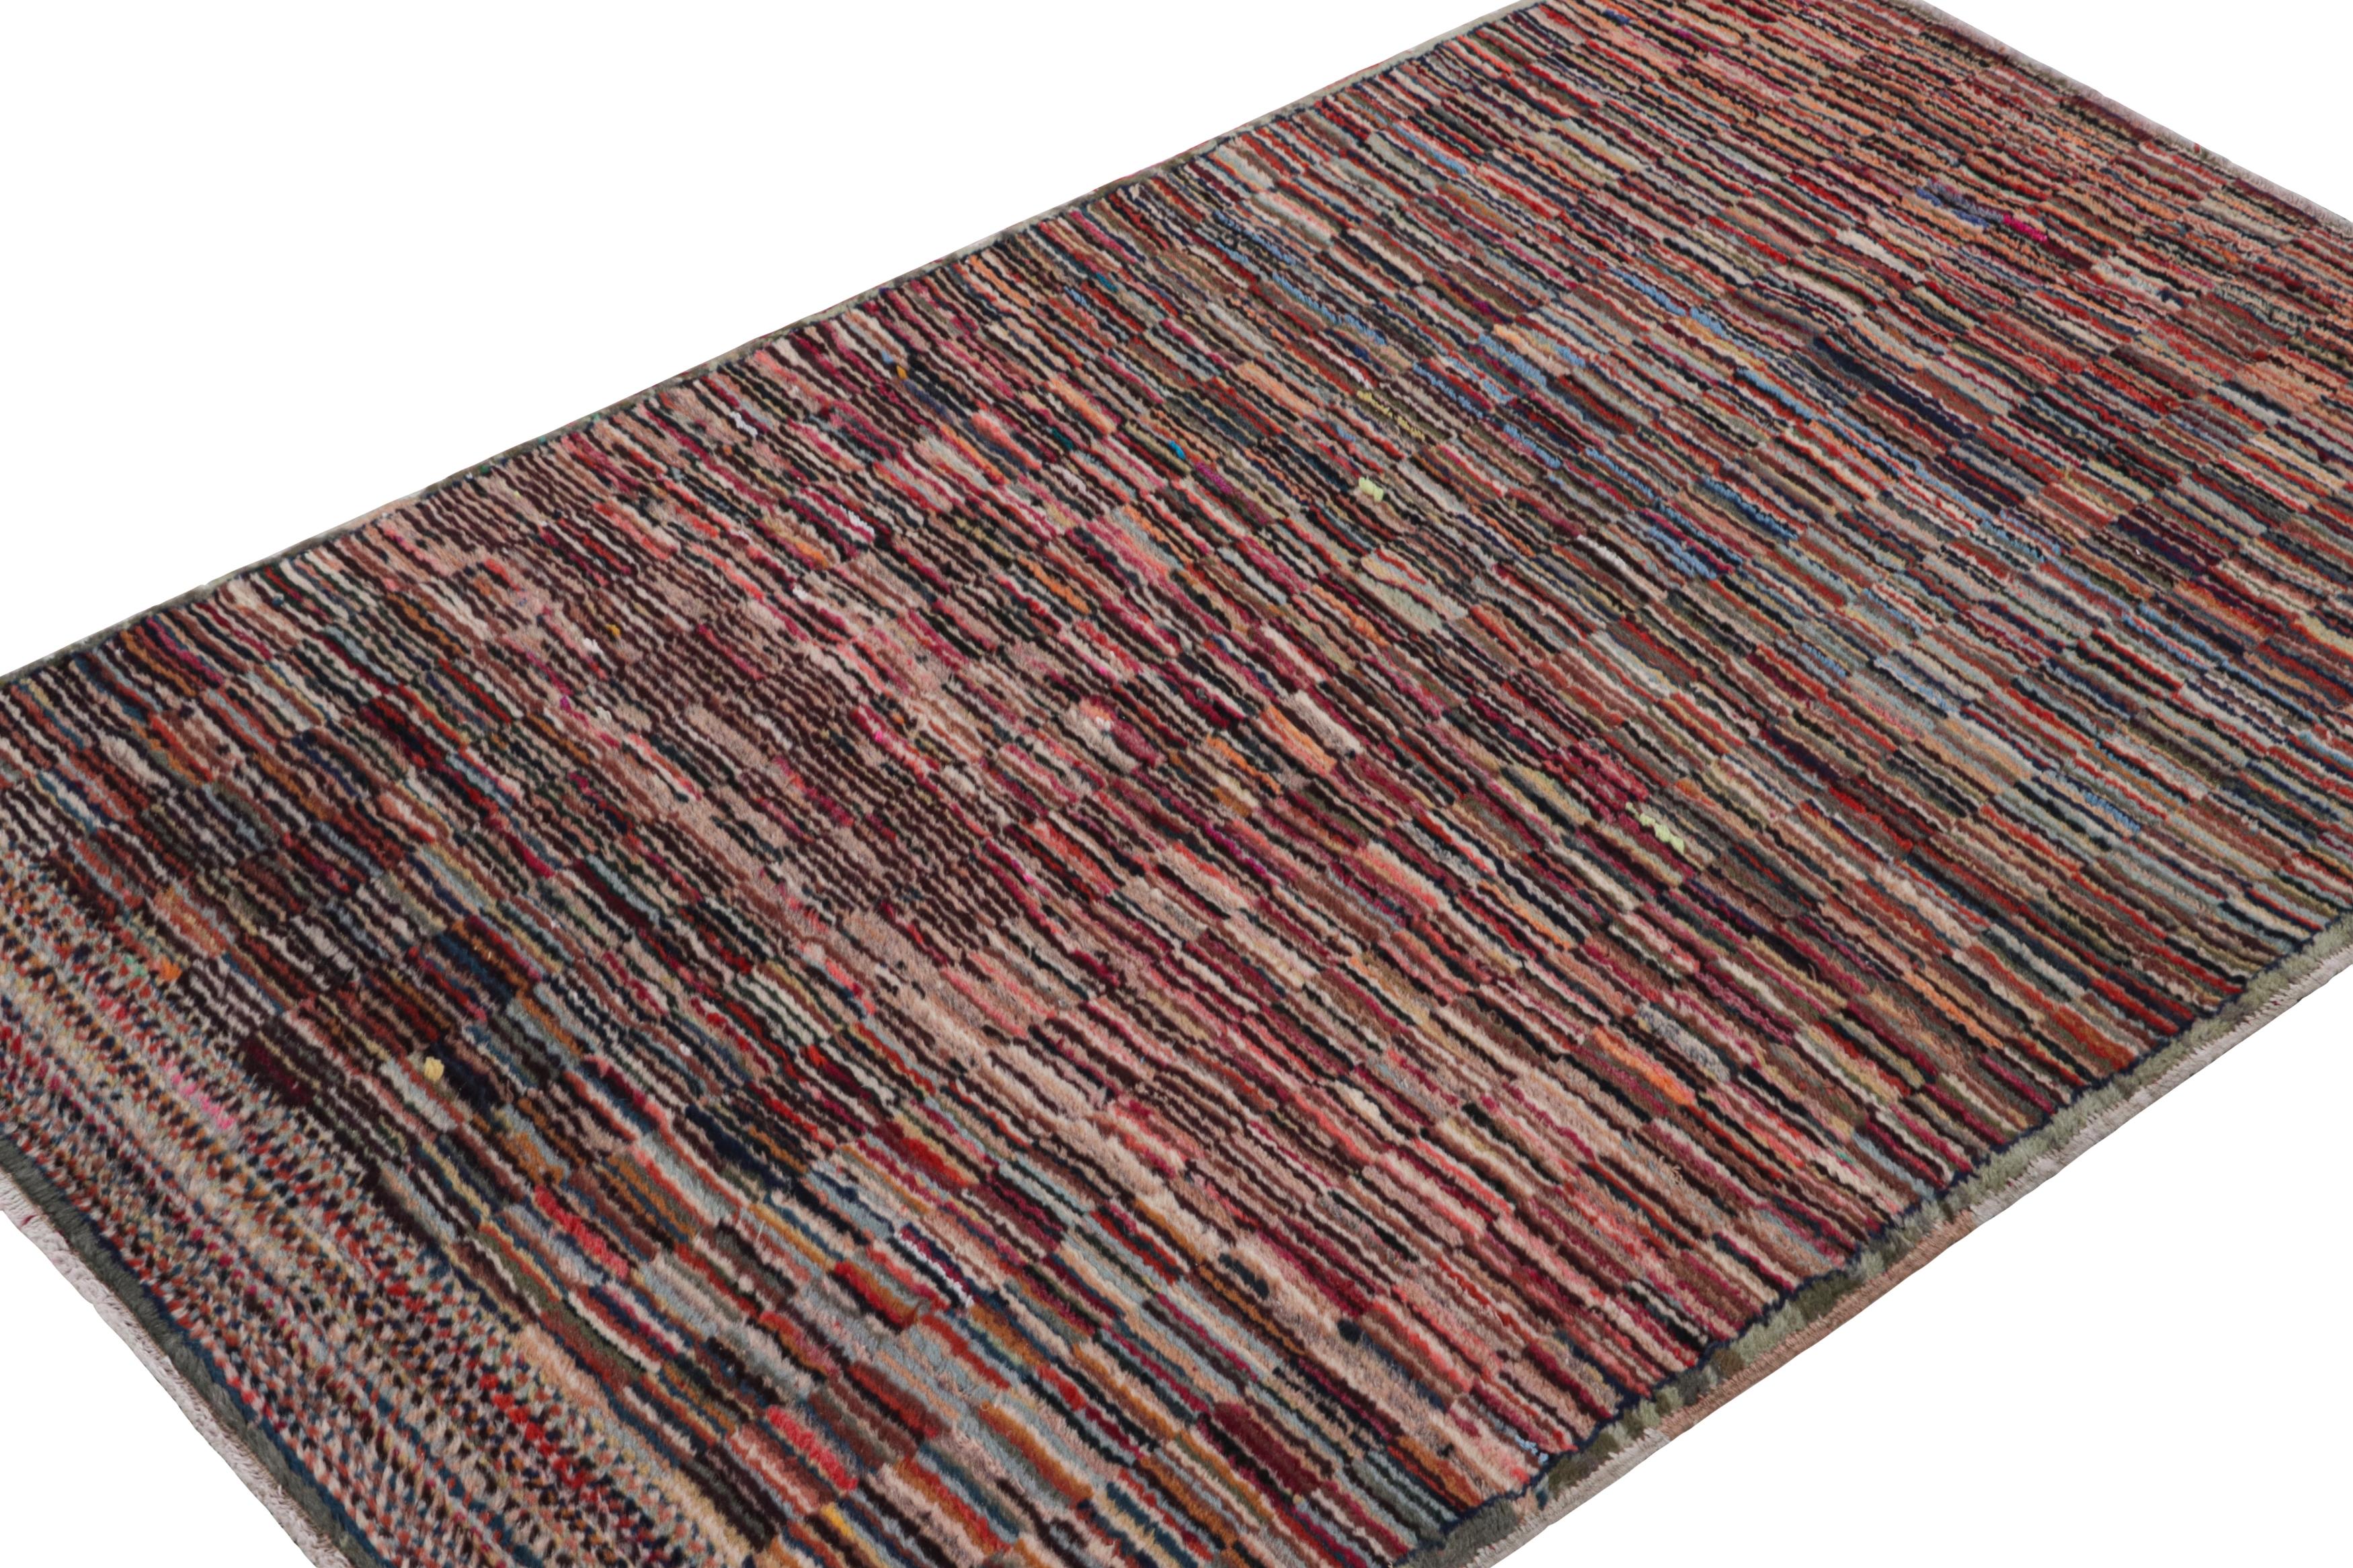 Handgeknüpft in Wolle, ca. 1960 - 1970, ist dieser 3x5 Vintage Polychromatic Deco Teppich eine aufregende neue Ergänzung zur Rug & Kilim Mid-century Pasha Collection'S. Dieses Design ist ein Meisterstück von Müren, denn es ist skurril und gut